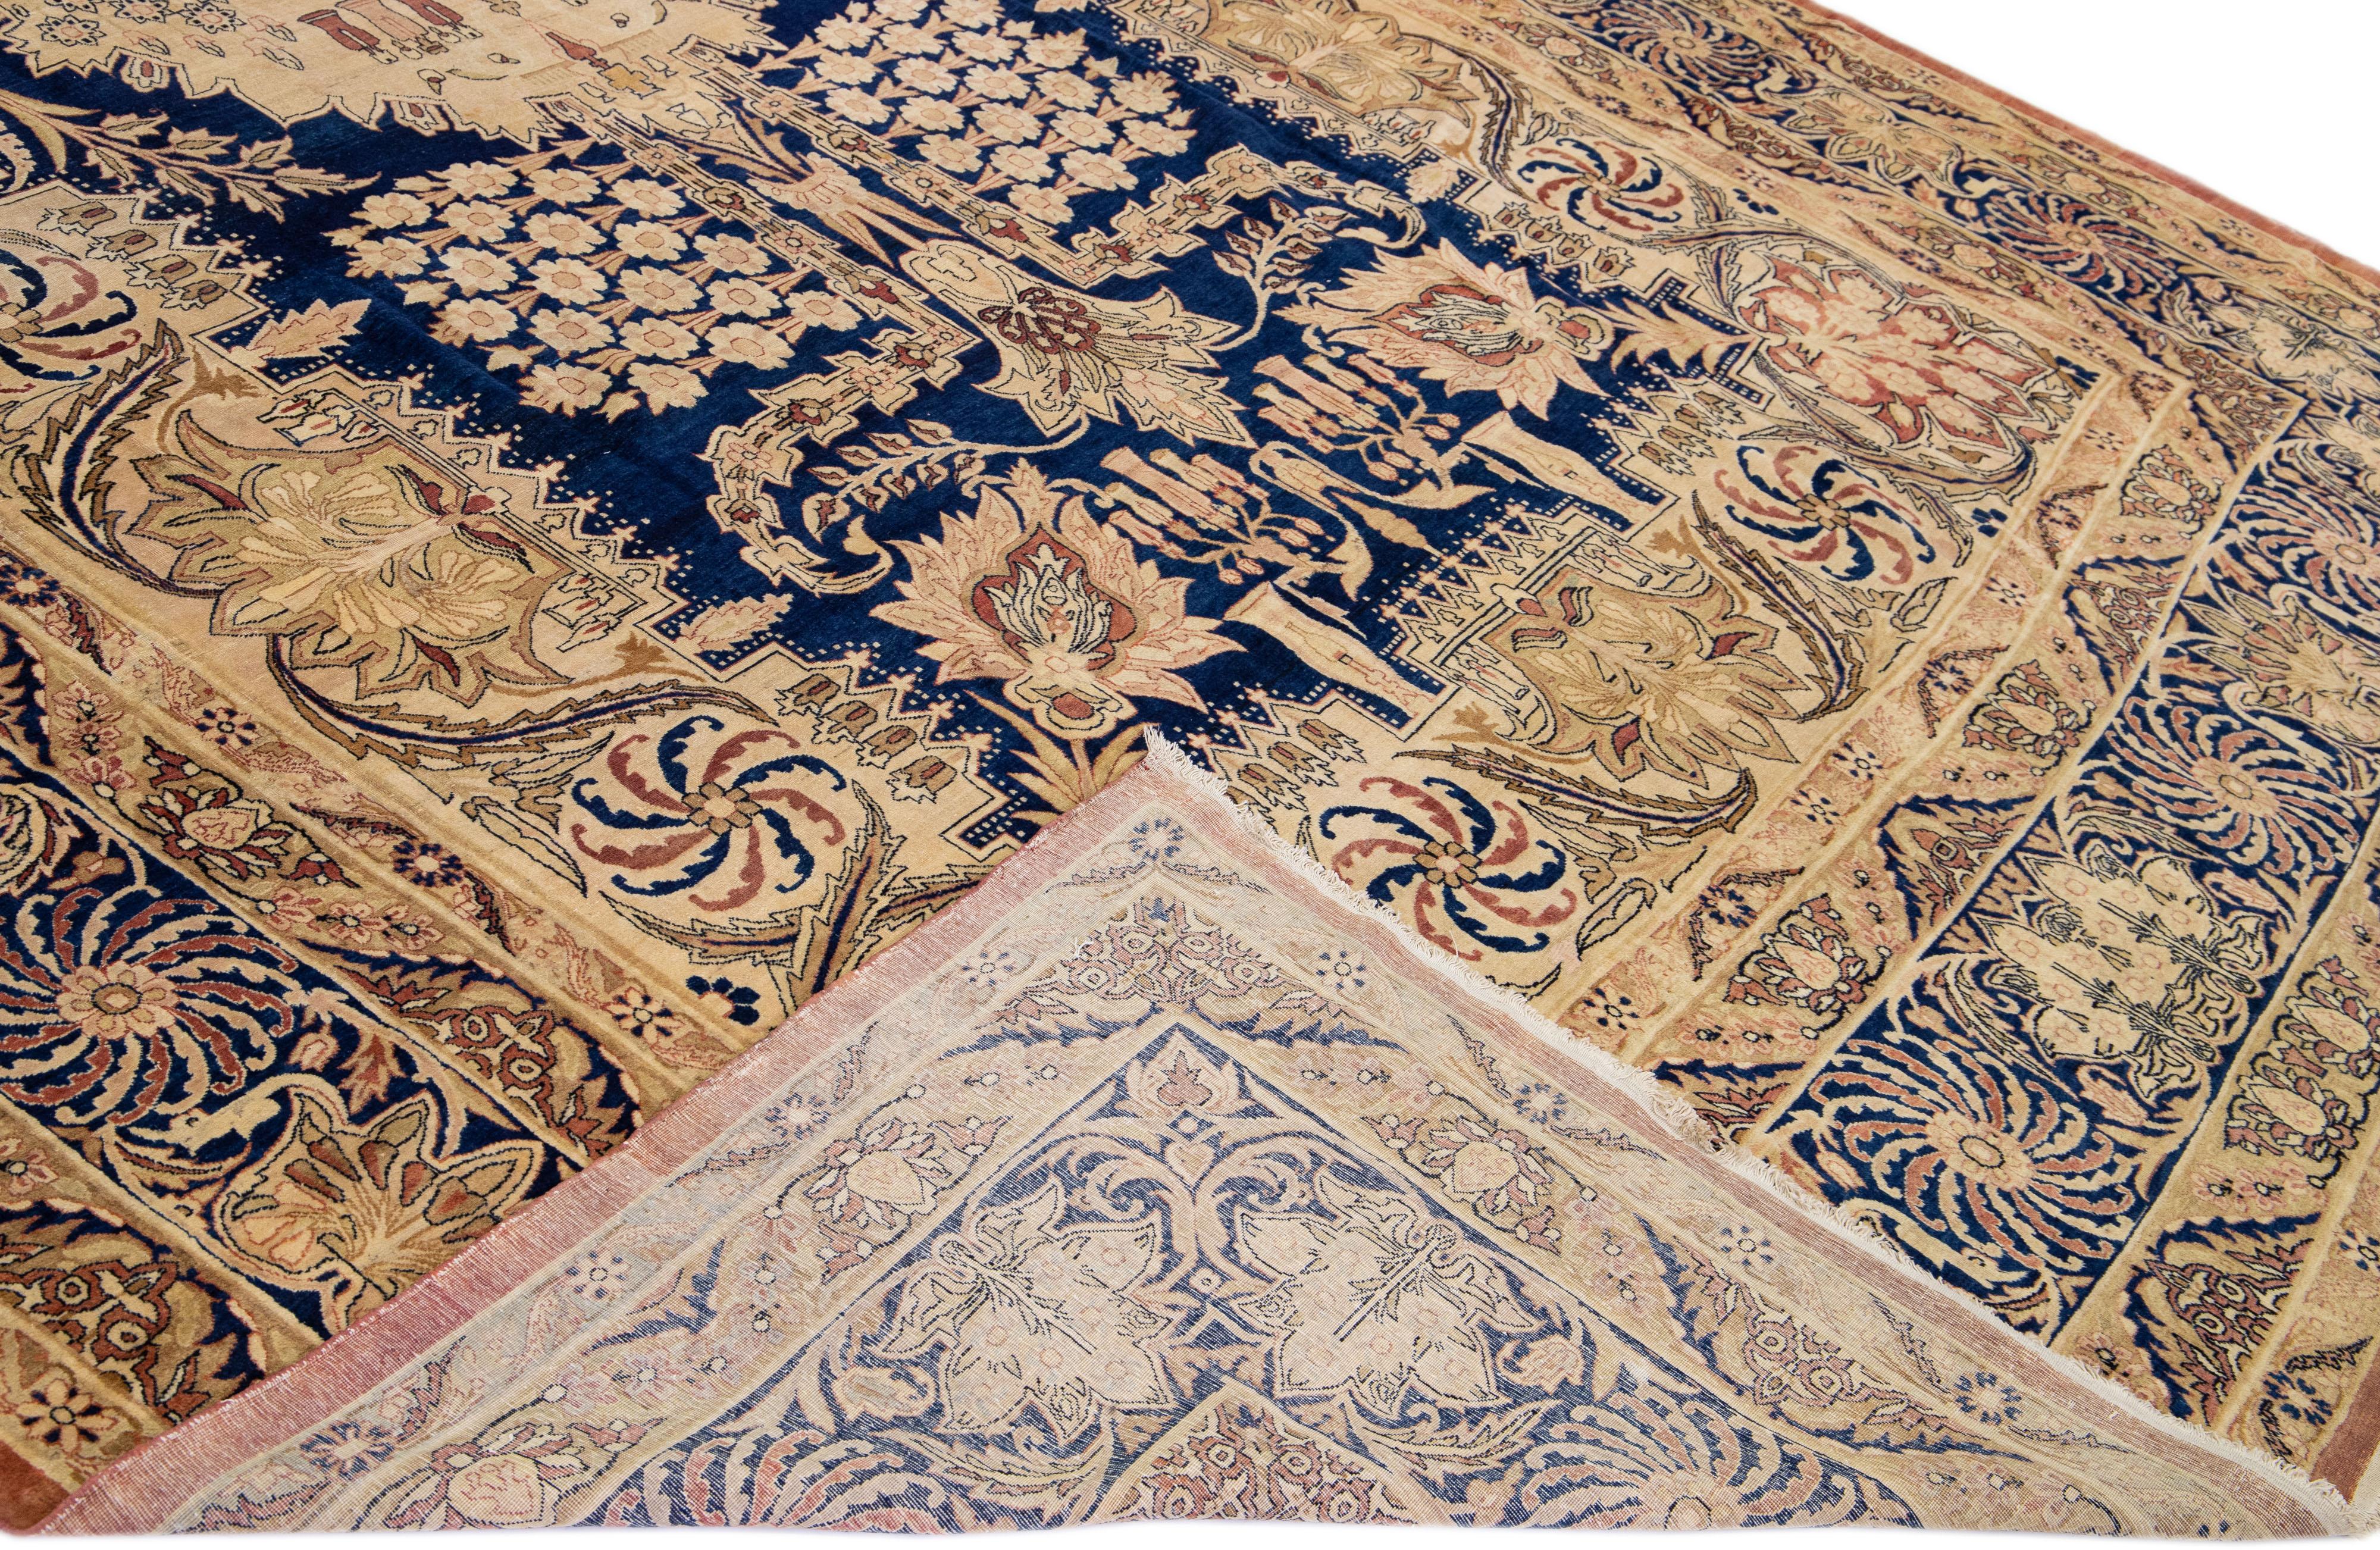 Magnifique tapis antique Kerman en laine nouée à la main avec un champ beige. Ce tapis persan présente des accents bleus et bruns dans un magnifique motif floral en médaillon.

Ce tapis mesure : 11'5